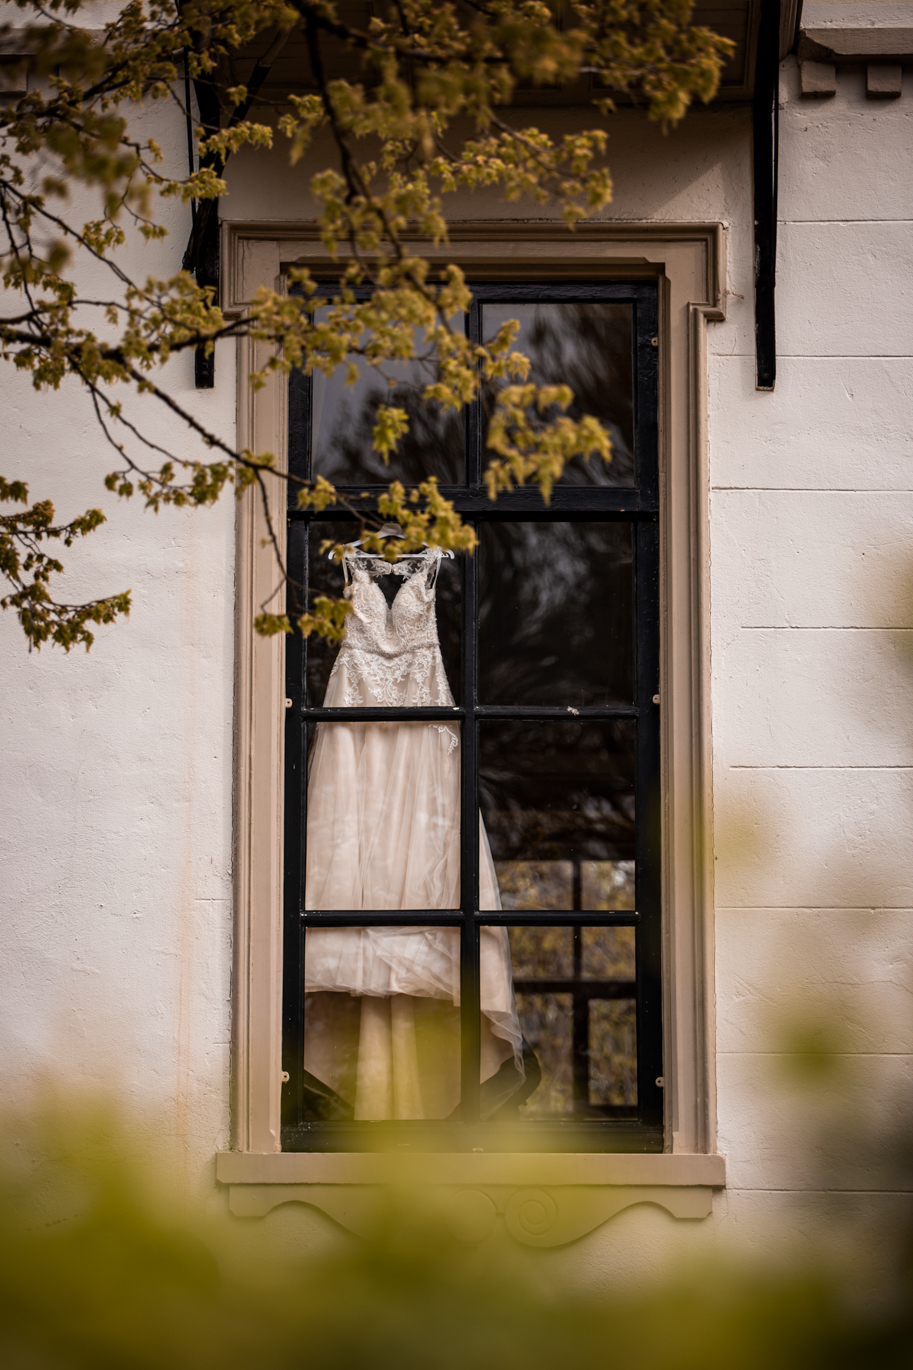 Trouwjurk door het raam van het landgoed op de Veluwe. Mooie groene uitstraling en romantisch.